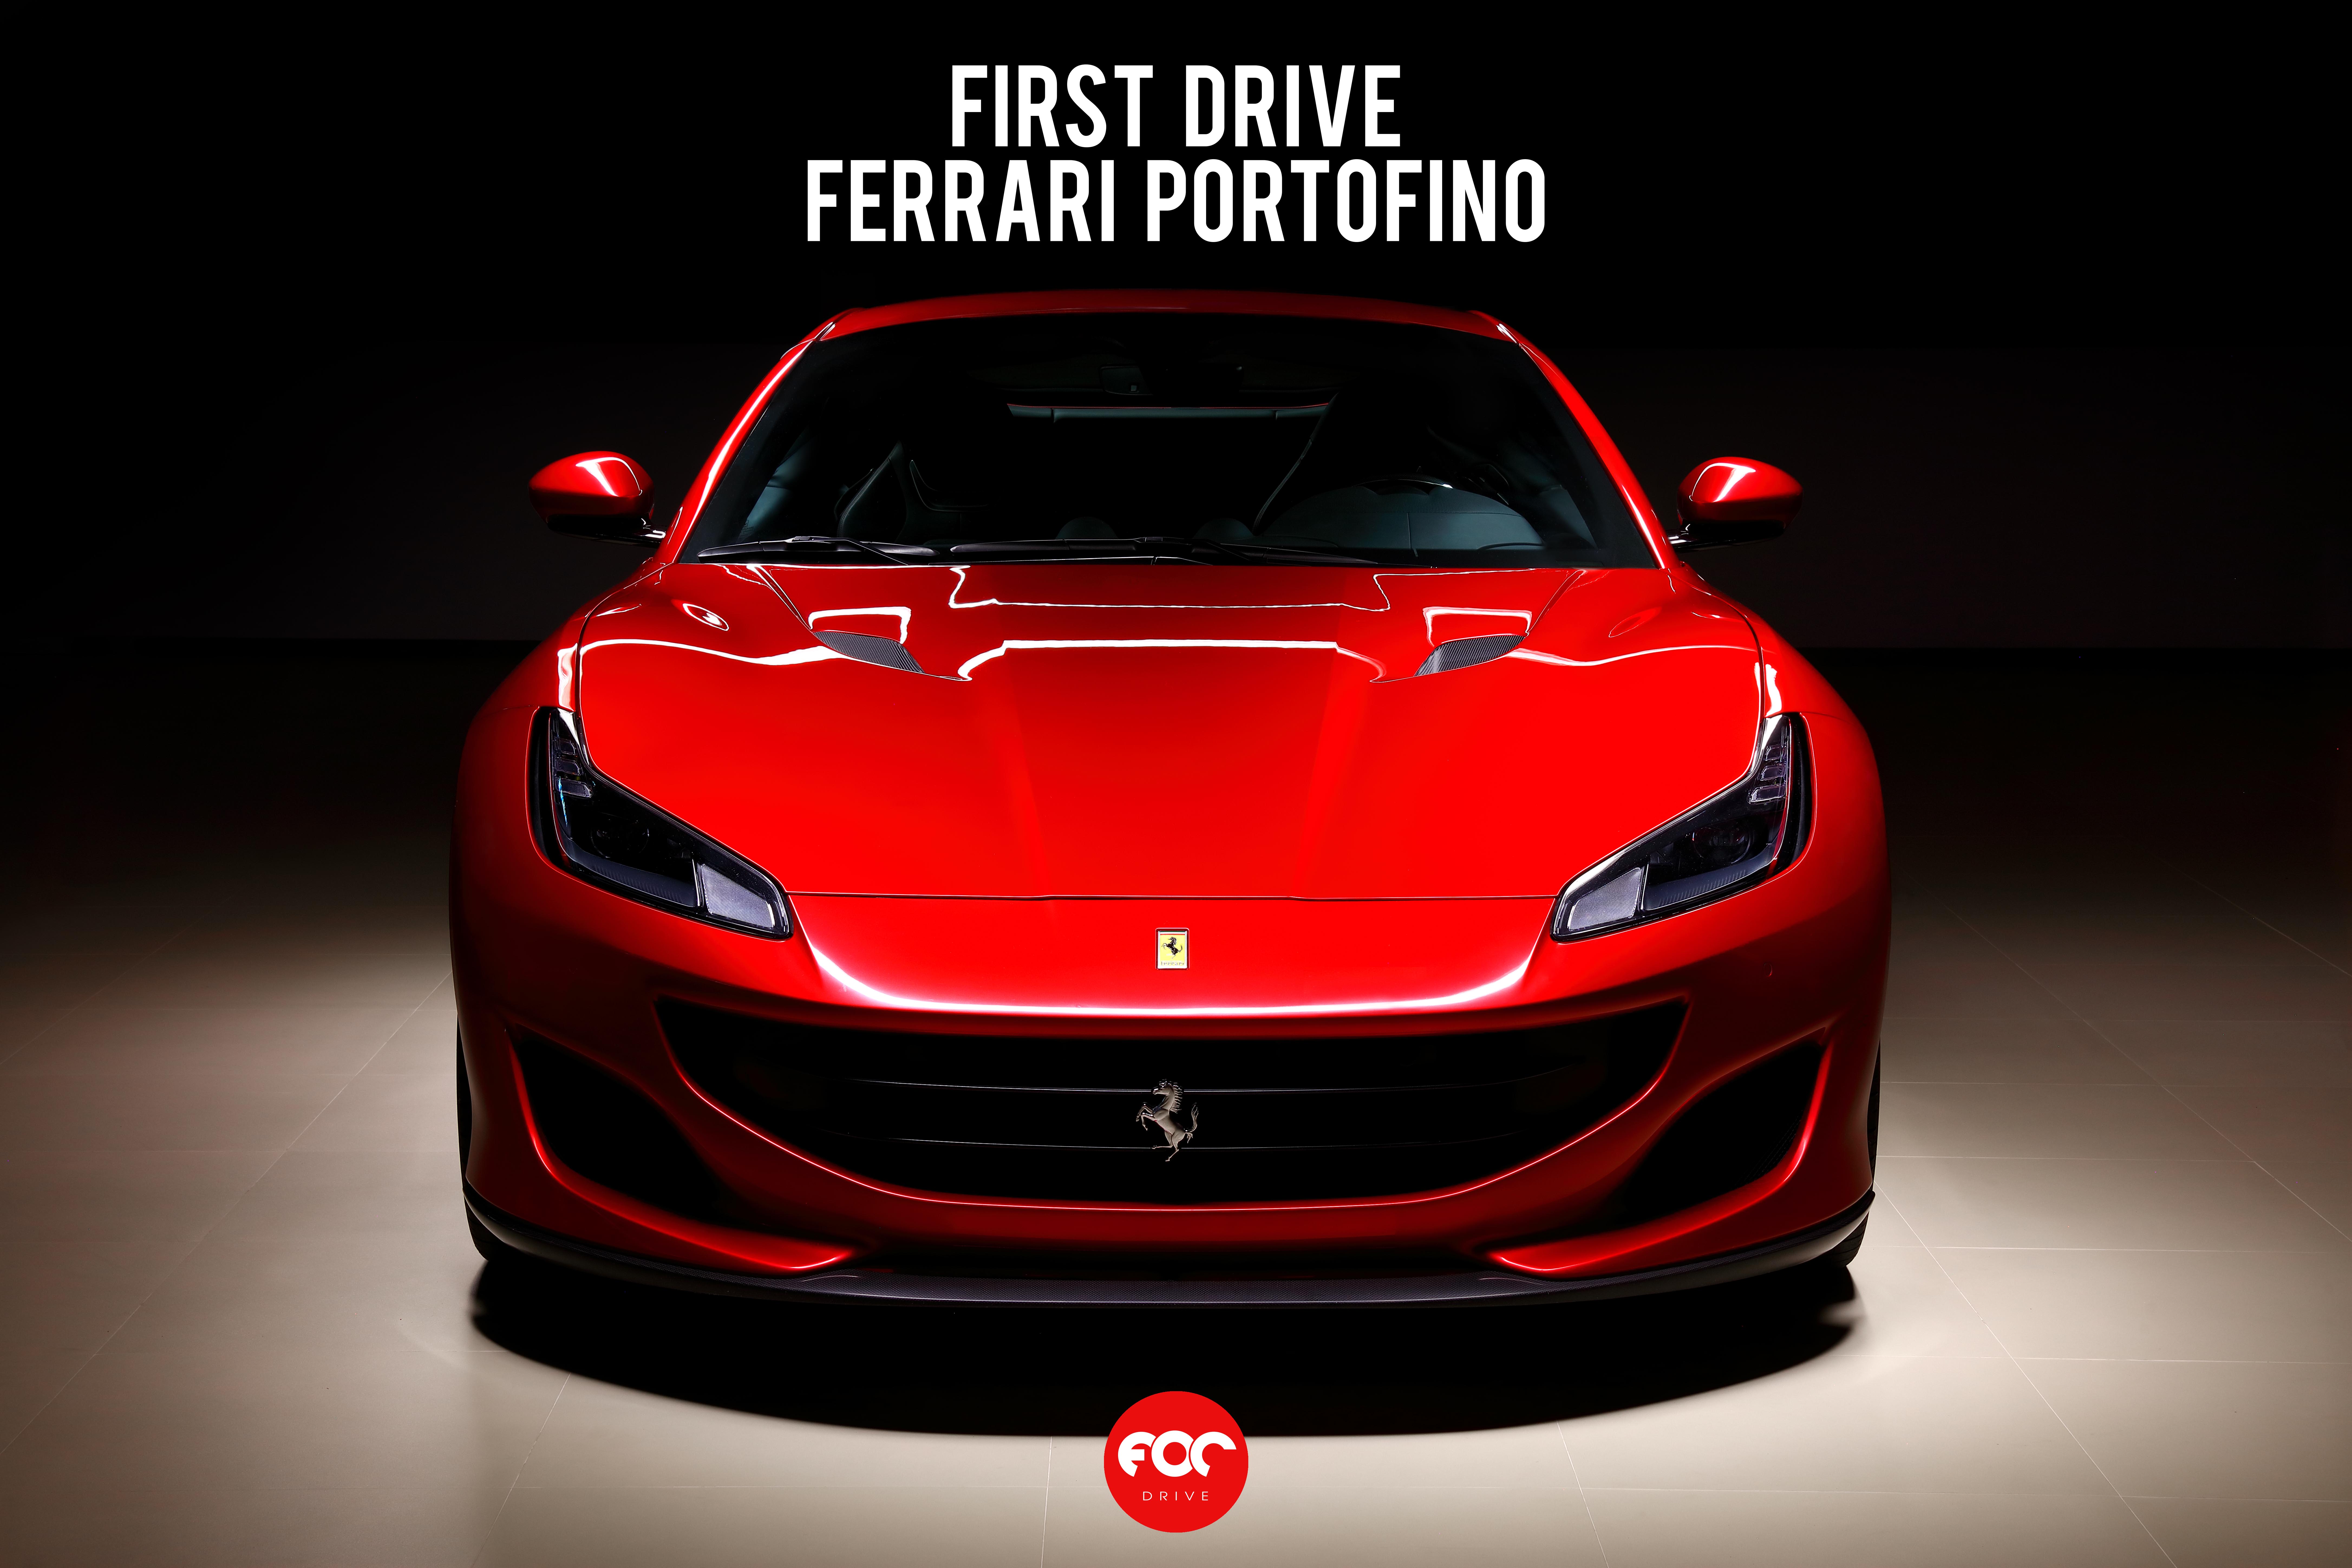 Test Drive Ferrari Portofino | FOC Drive